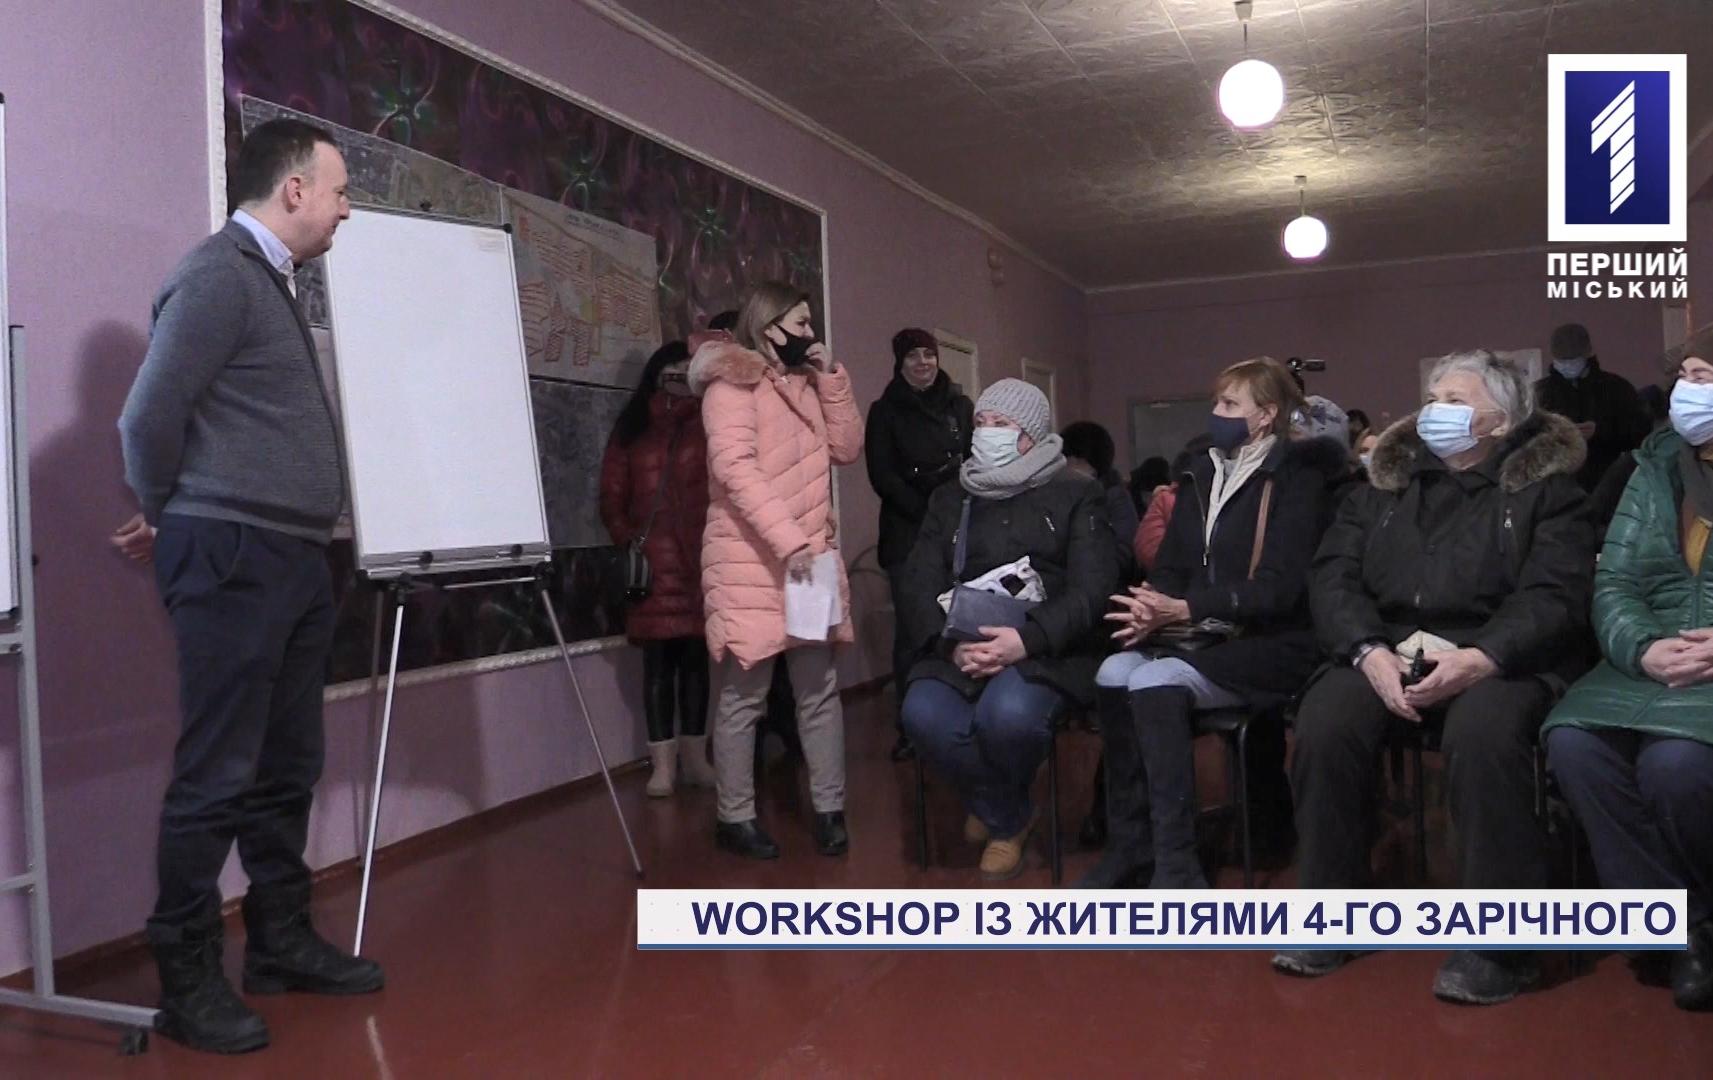 Мешканці одного з районів Кривого Рогу відвідали семінар щодо оновлення їхнього житломасиву